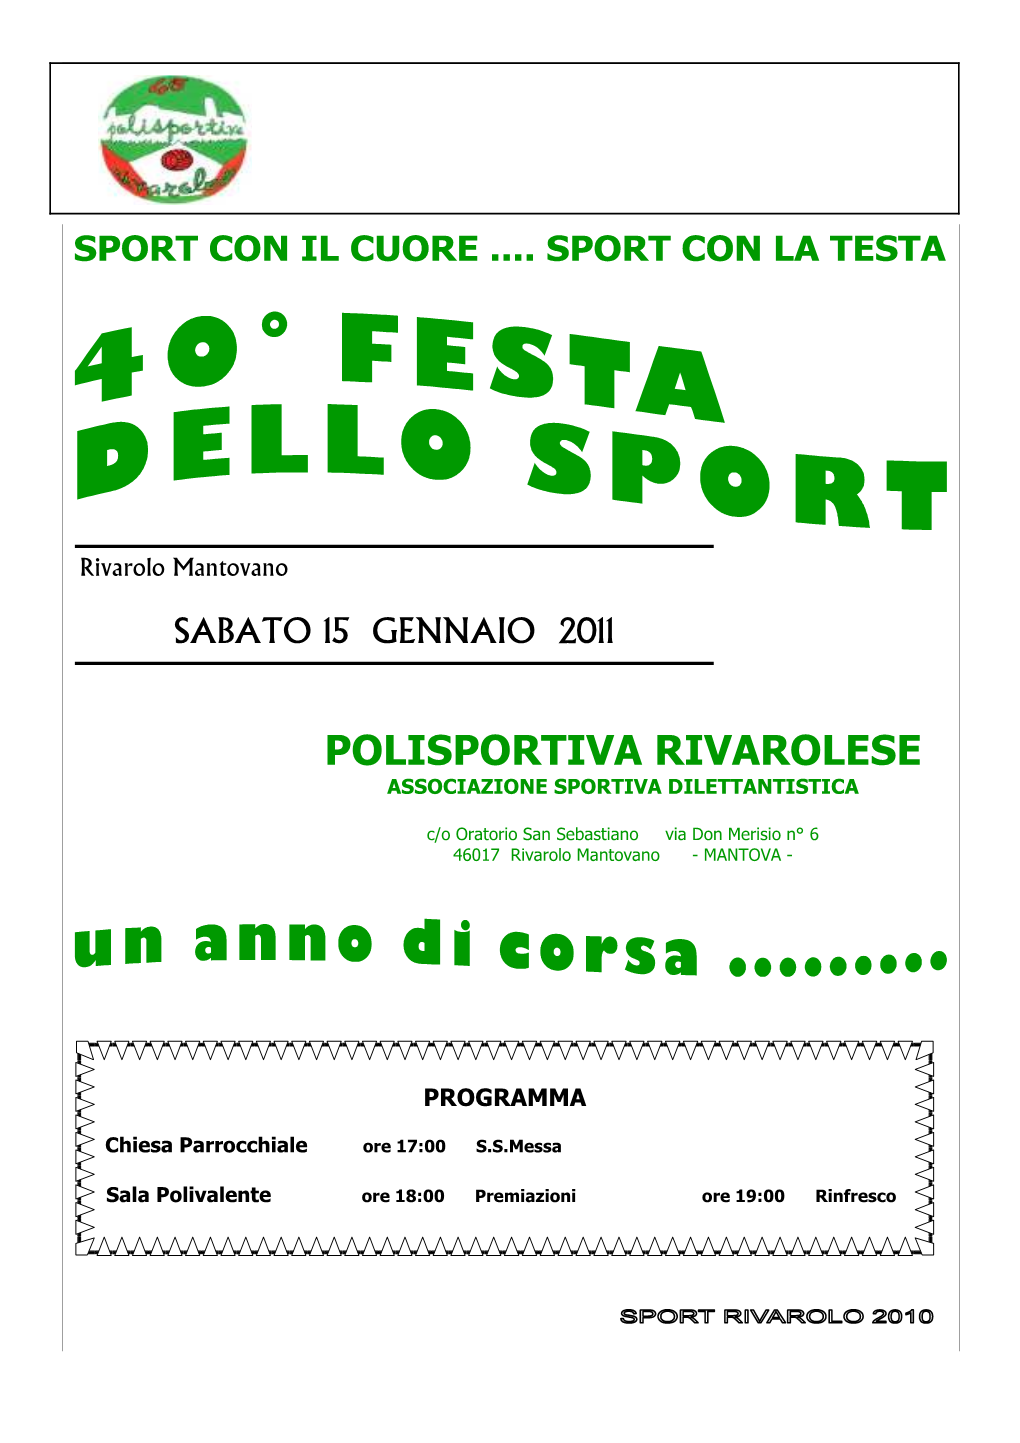 Sport-Rivarolo 2010